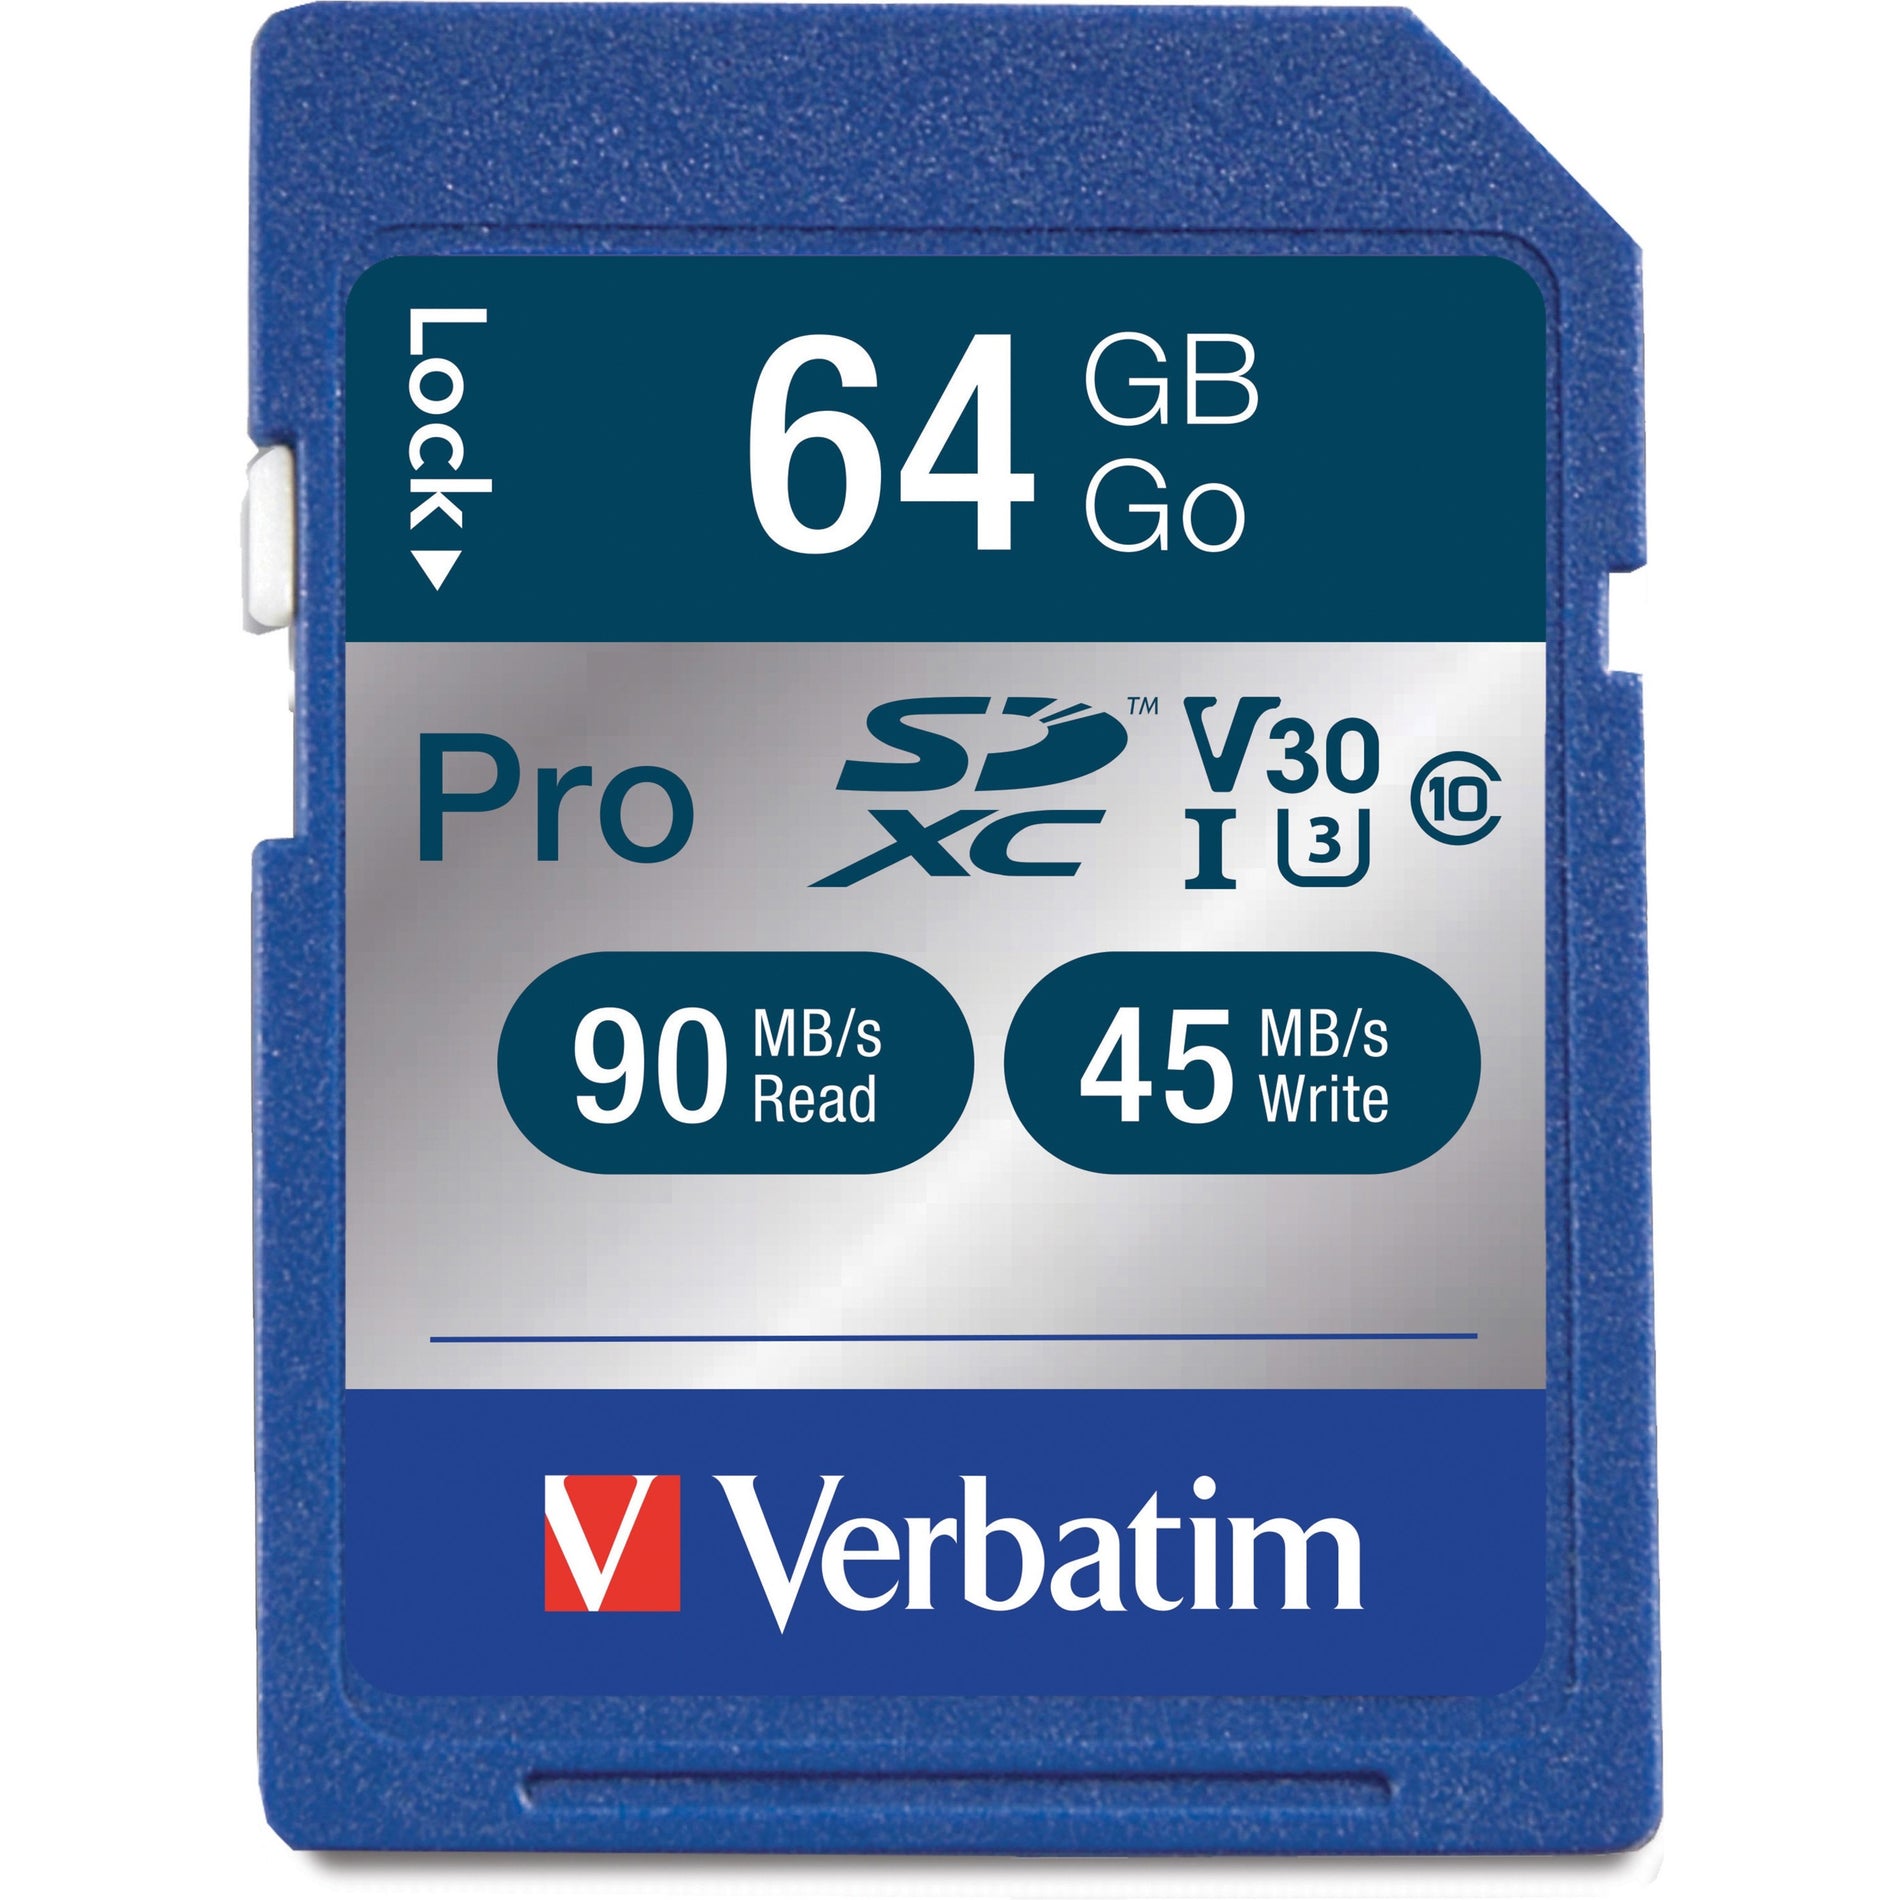 Verbatim 98670 64 GB Pro 600X SDXC Speicherkarte UHS-I V30 U3 Klasse 10